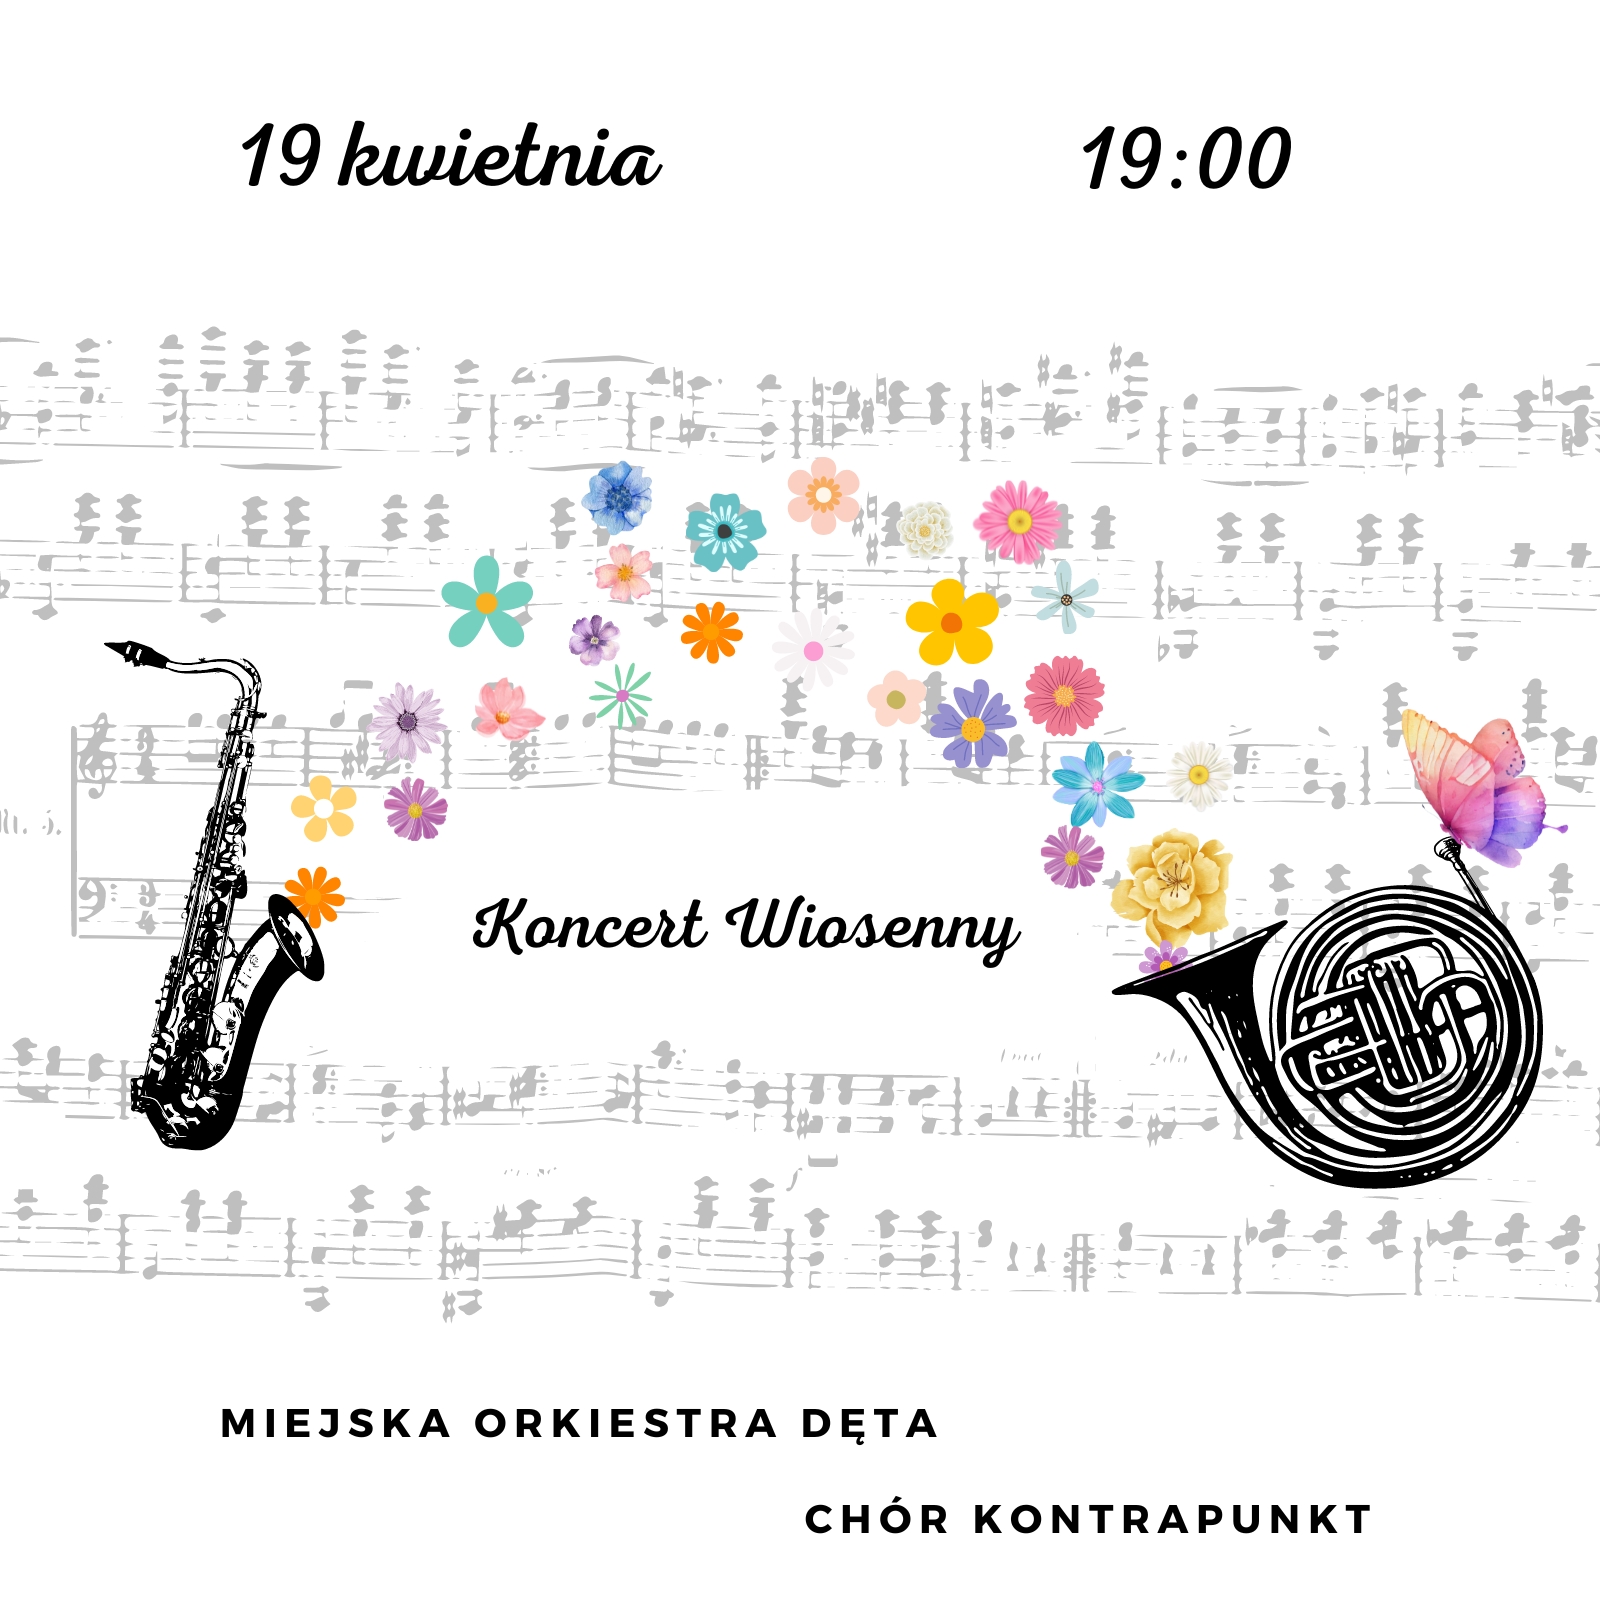 Koncert Wiosenny Chóru Kontrapunkt i Miejskiej Orkiestry Dętej